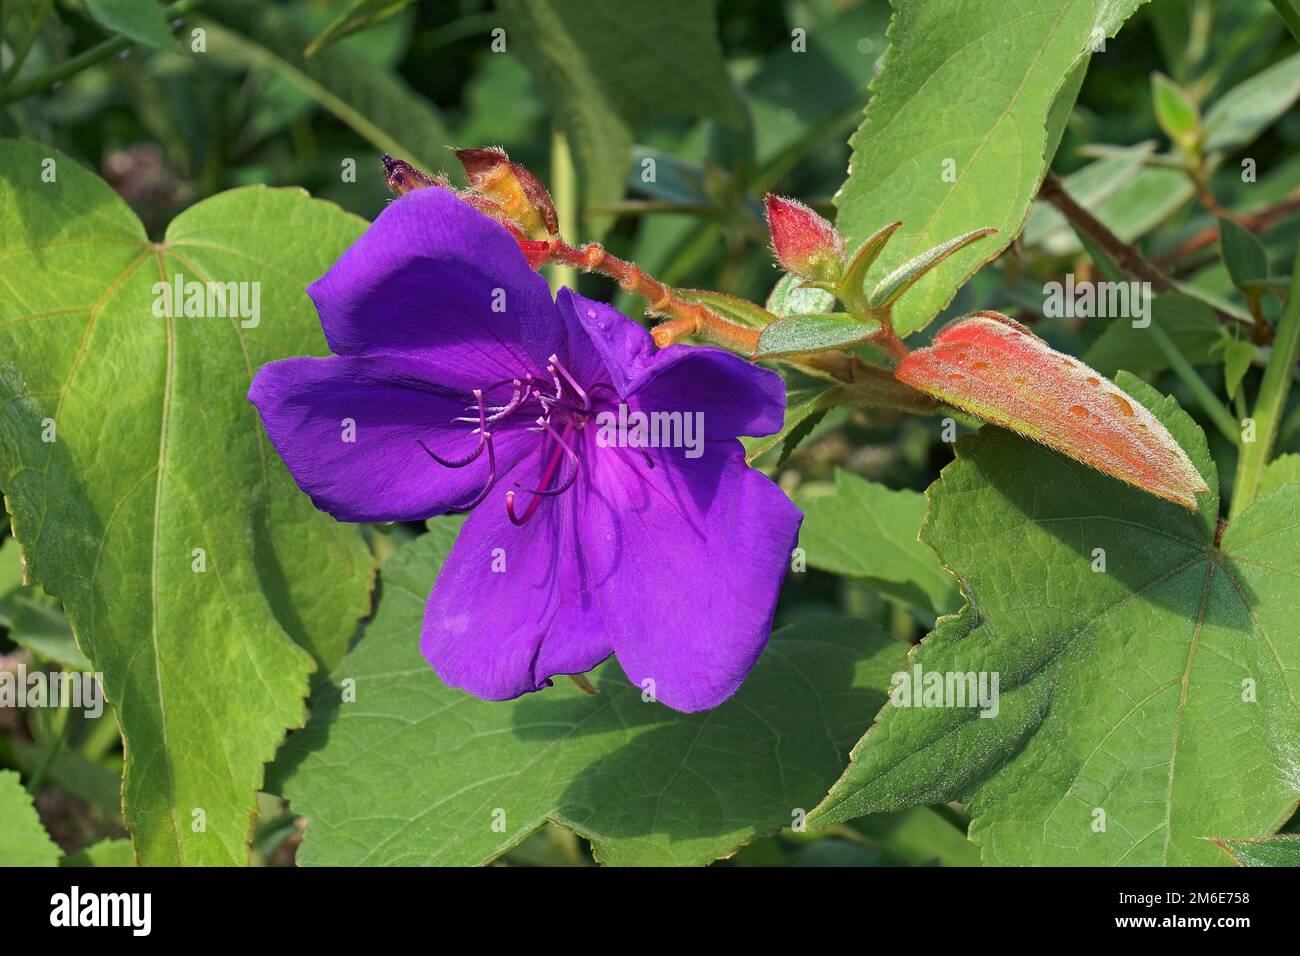 Close up image of Glory bush flower (Tibouchina urvilleana) Stock Photo